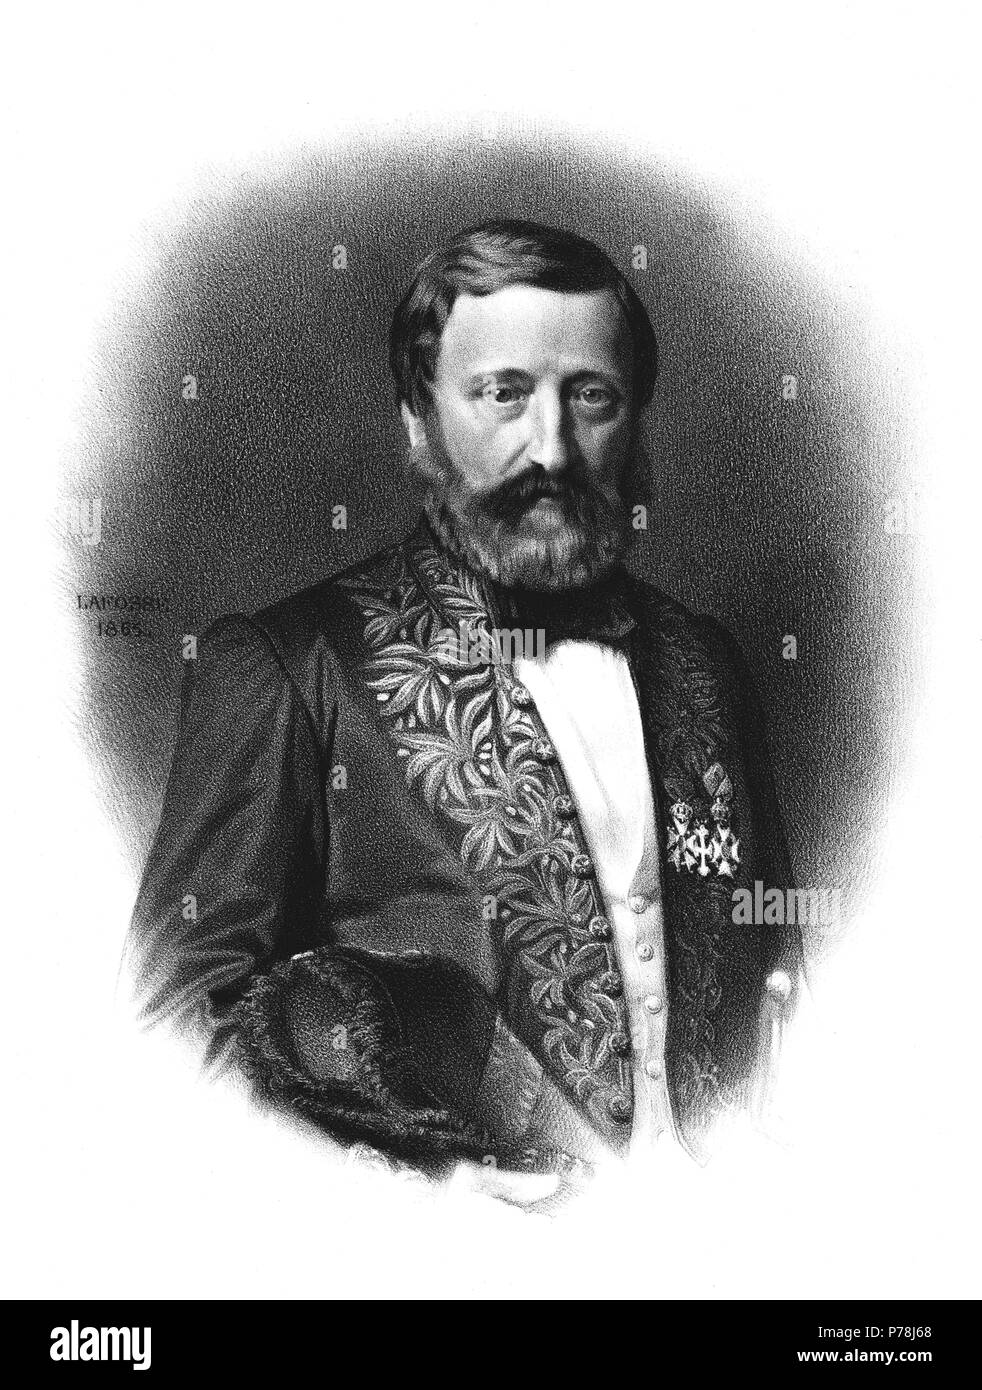 Berger de Xivrey, Jules (1801-1863), bibliotecario e historiador de las letras francés. Grabado de 1865. Stock Photo